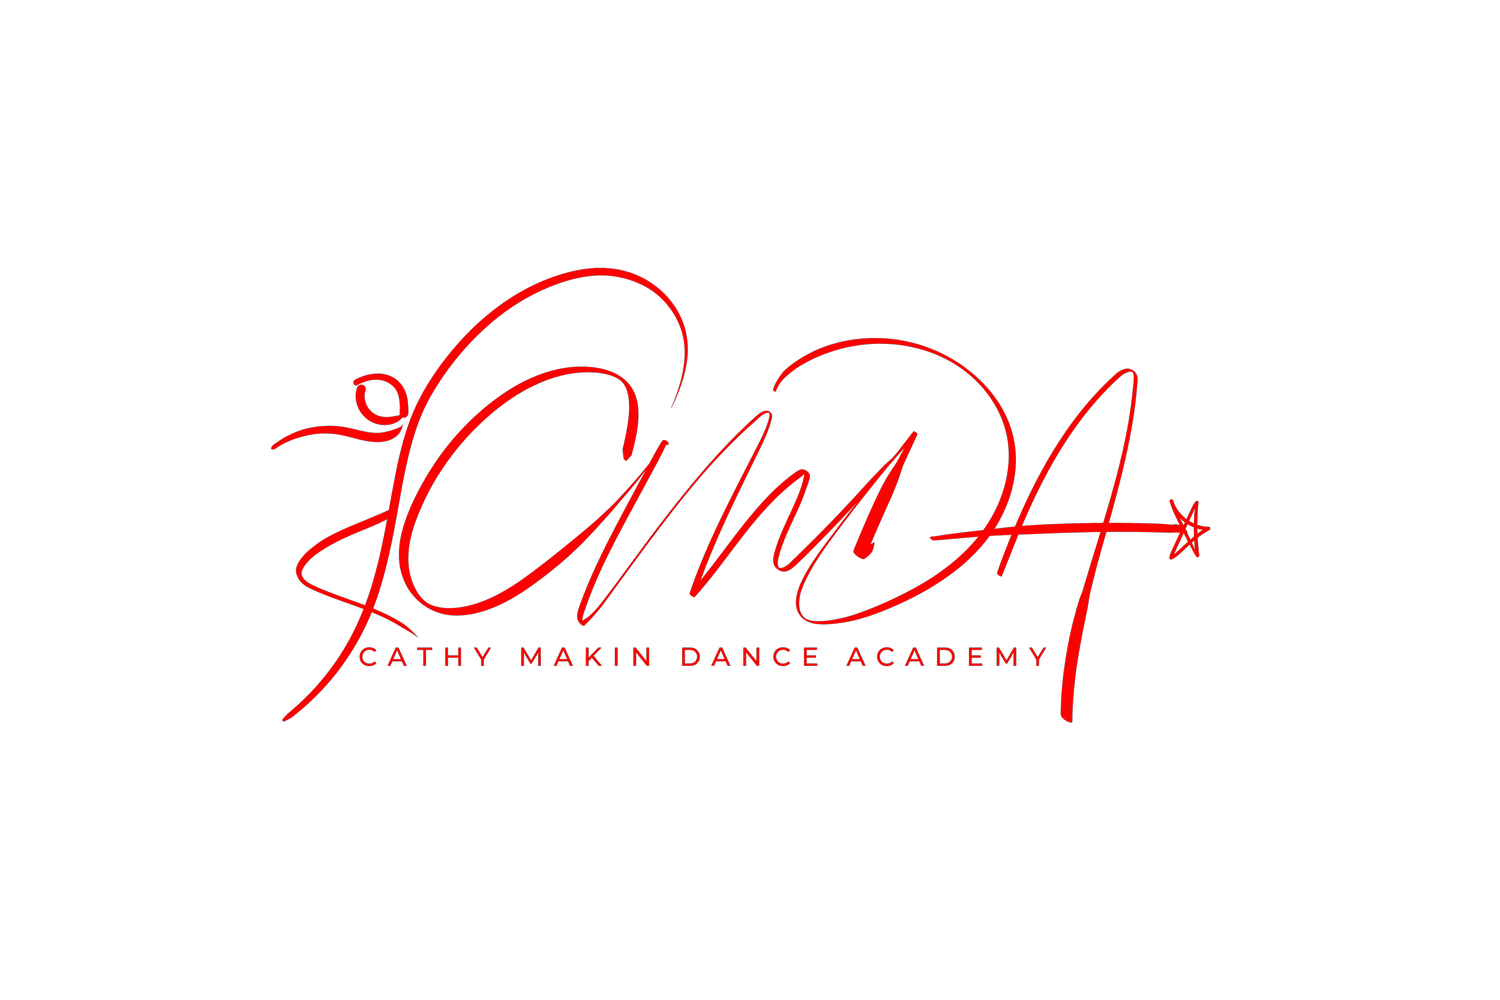 Cathy Makin Dance Academy